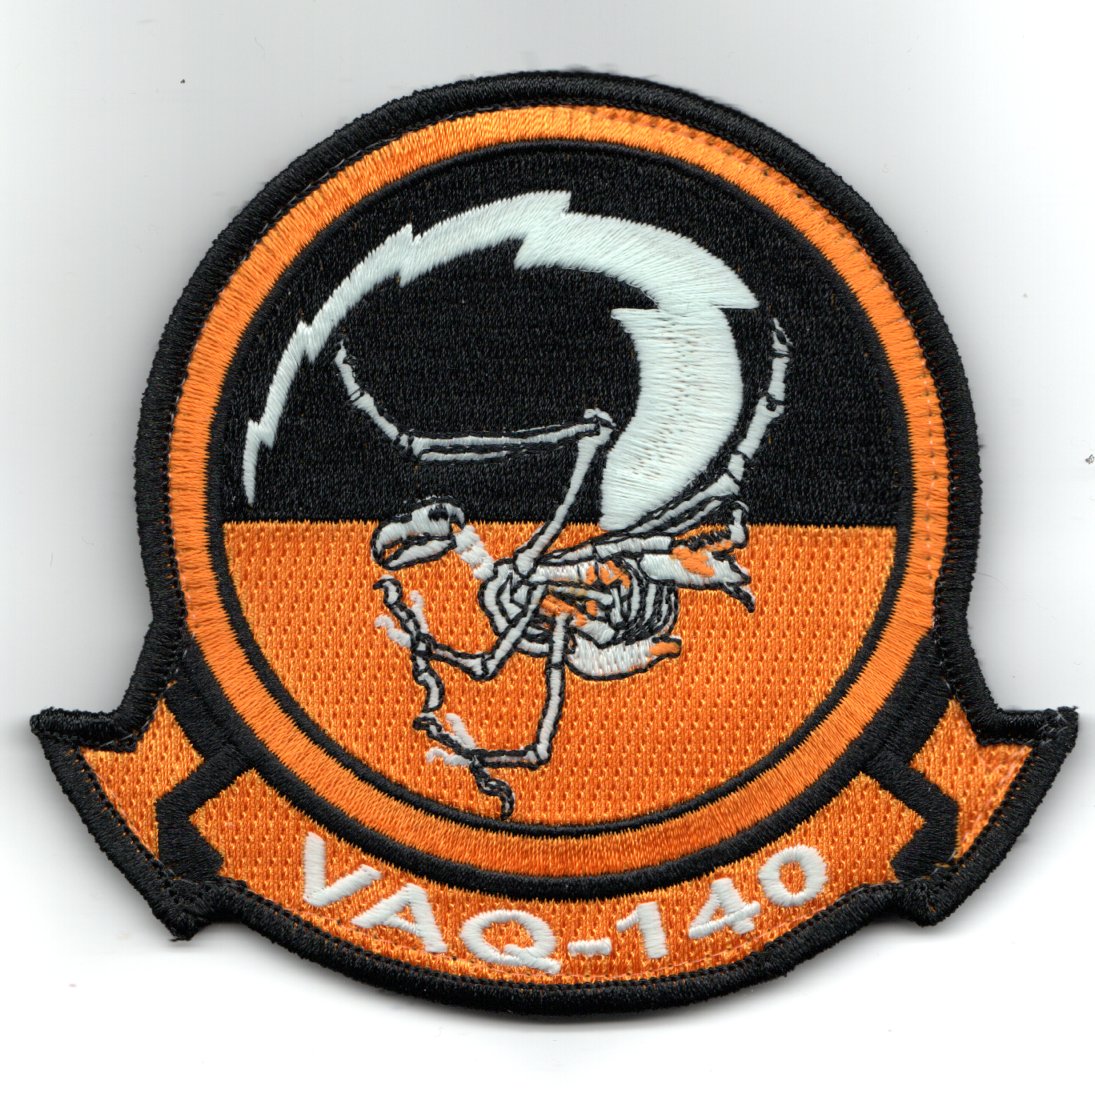 VAQ-140 'HALLOWEEN' Squadron Patch (GITD/V)